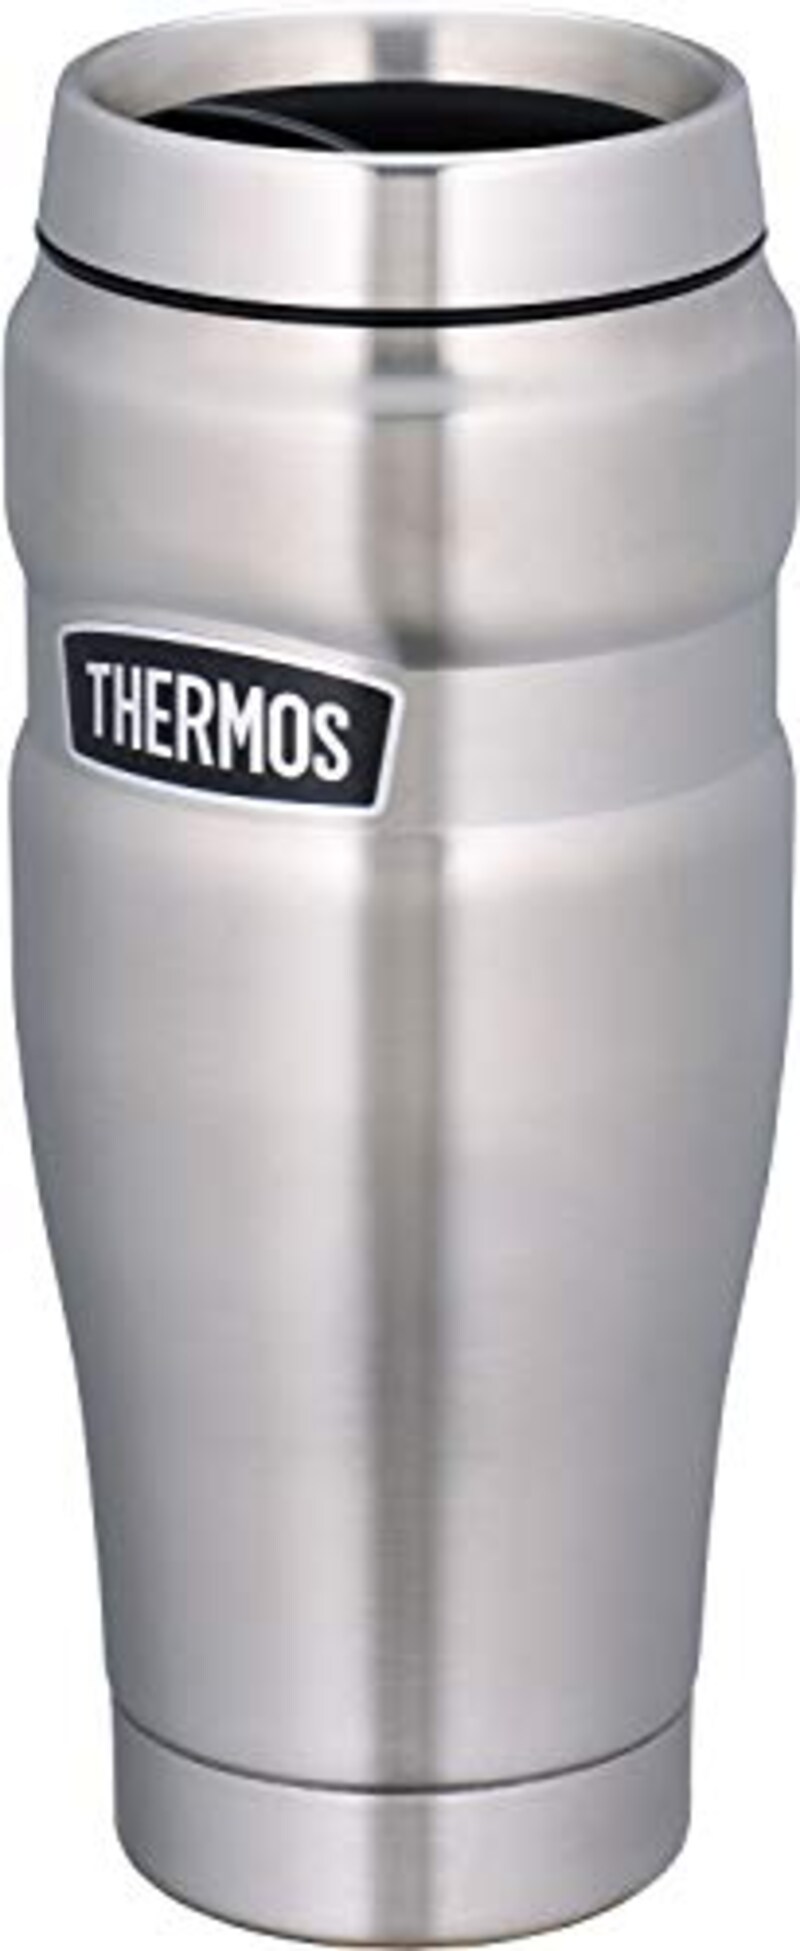 THERMOS(サーモス),真空断熱タンブラー アウトドアシリーズ,ROD-001 S